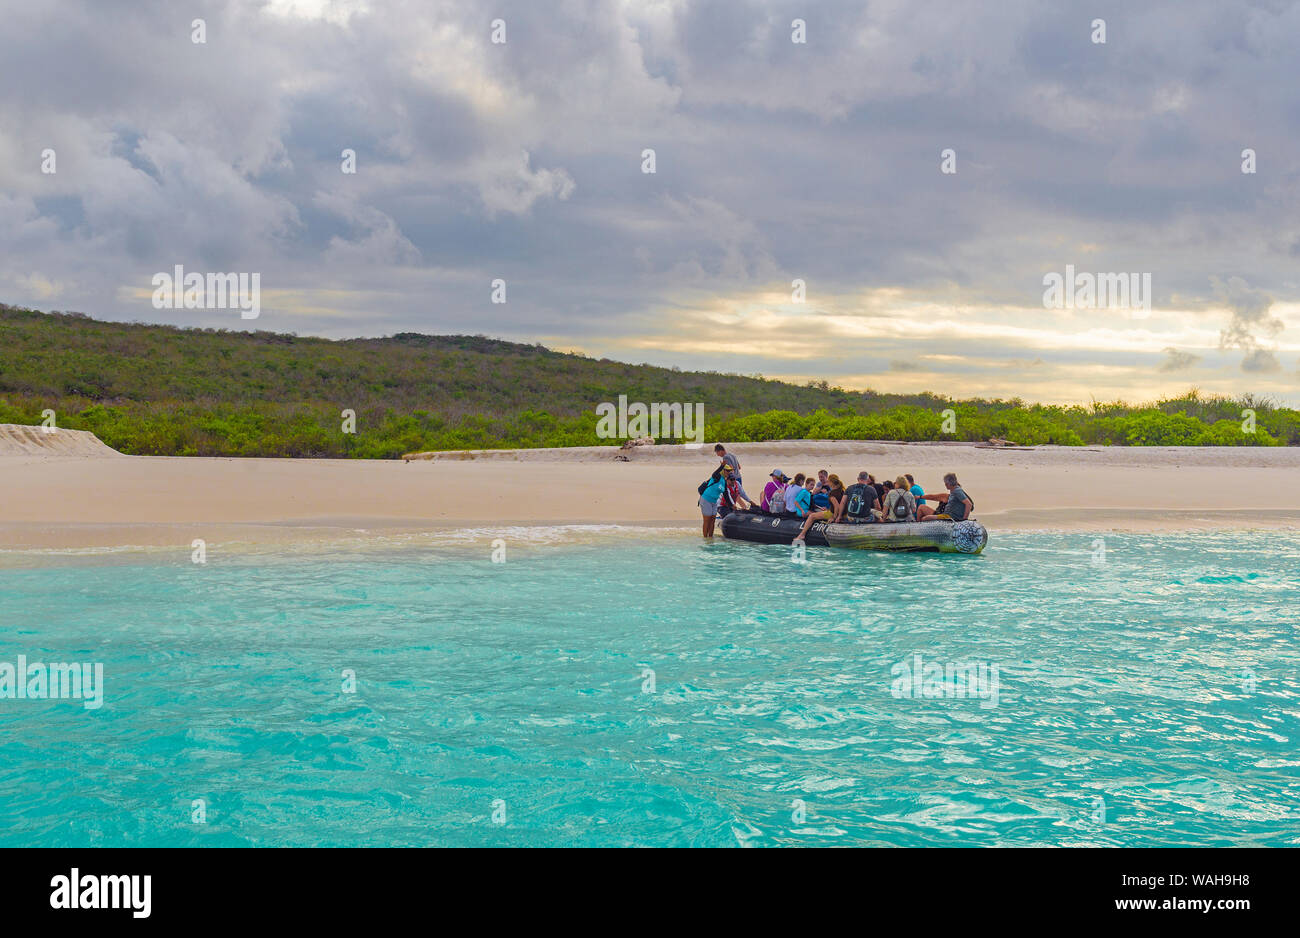 Los turistas tienen un desembarco mojado desde un bote zodiac tour en la playa de bahía Gardner o Gardner Bay, Isla Española, Las Islas Galápagos, Ecuador. Foto de stock